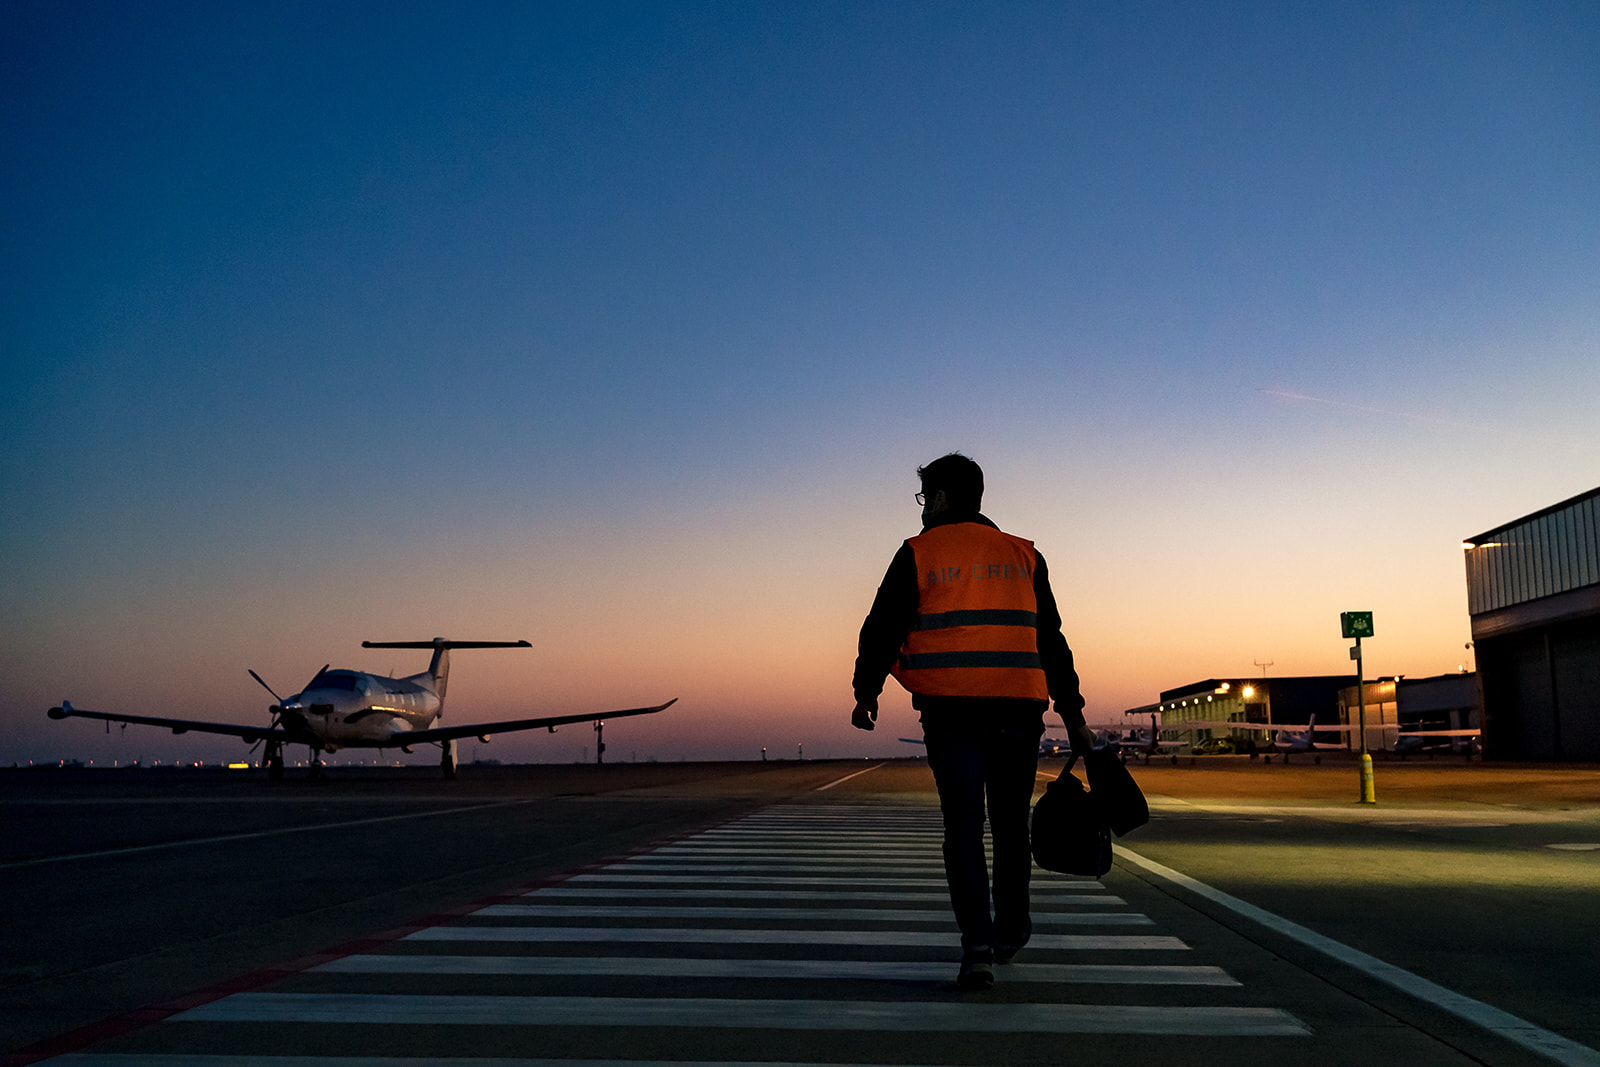 pilote se rends a pied vers son avion, aéroport Charleroi au lever du soleil